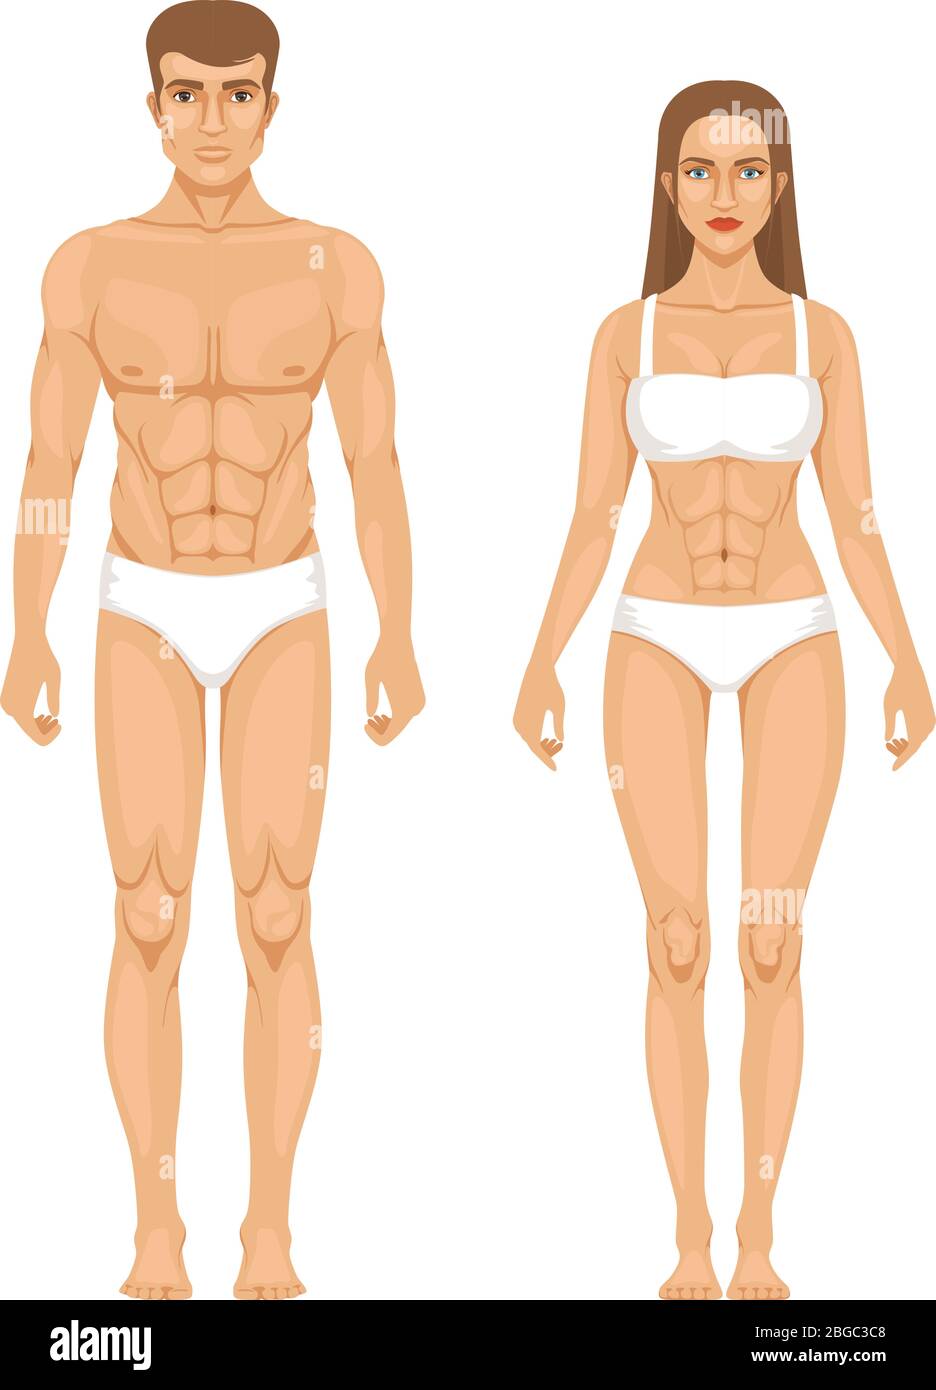 Modell der sportlichen Mann und Frau im Stehen von vorne. Verschiedene Körperteile. Vektorgrafik Stock Vektor